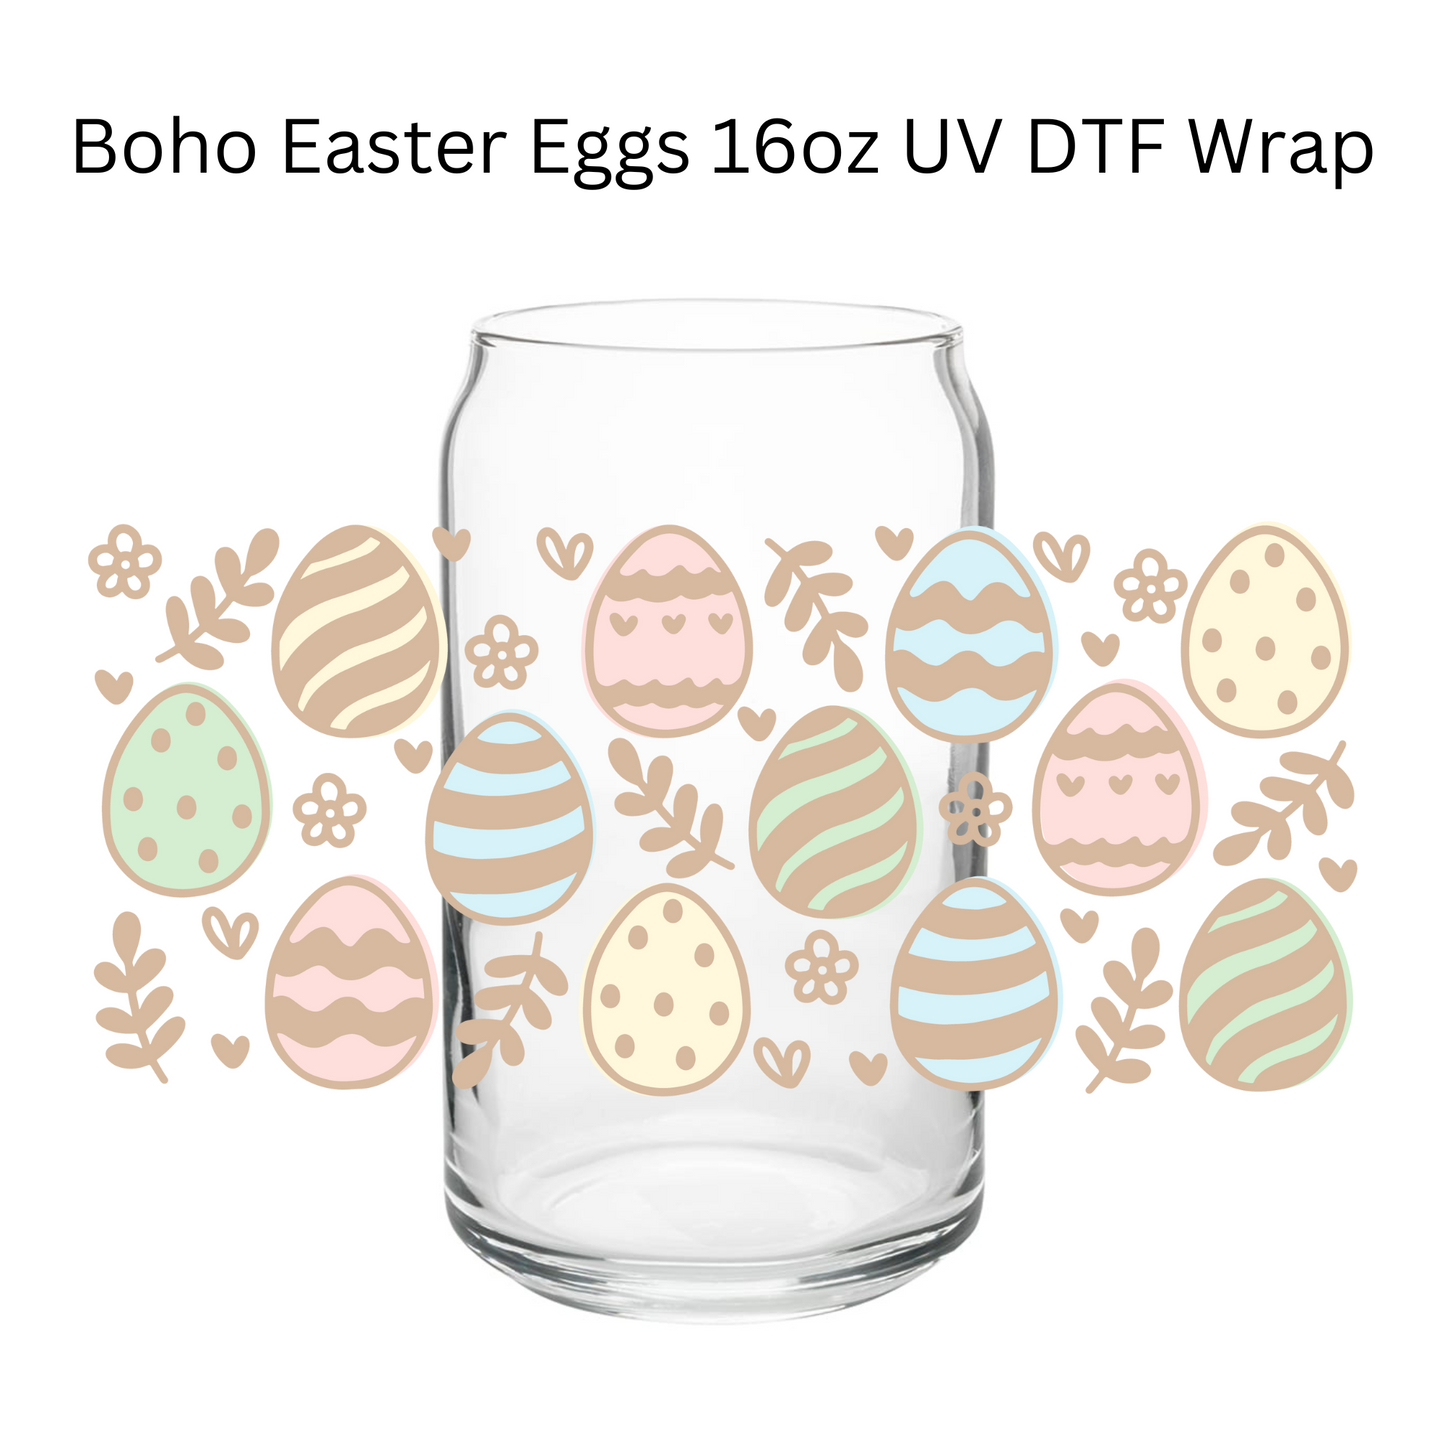 Boho Easter Eggs UV DTF Wrap